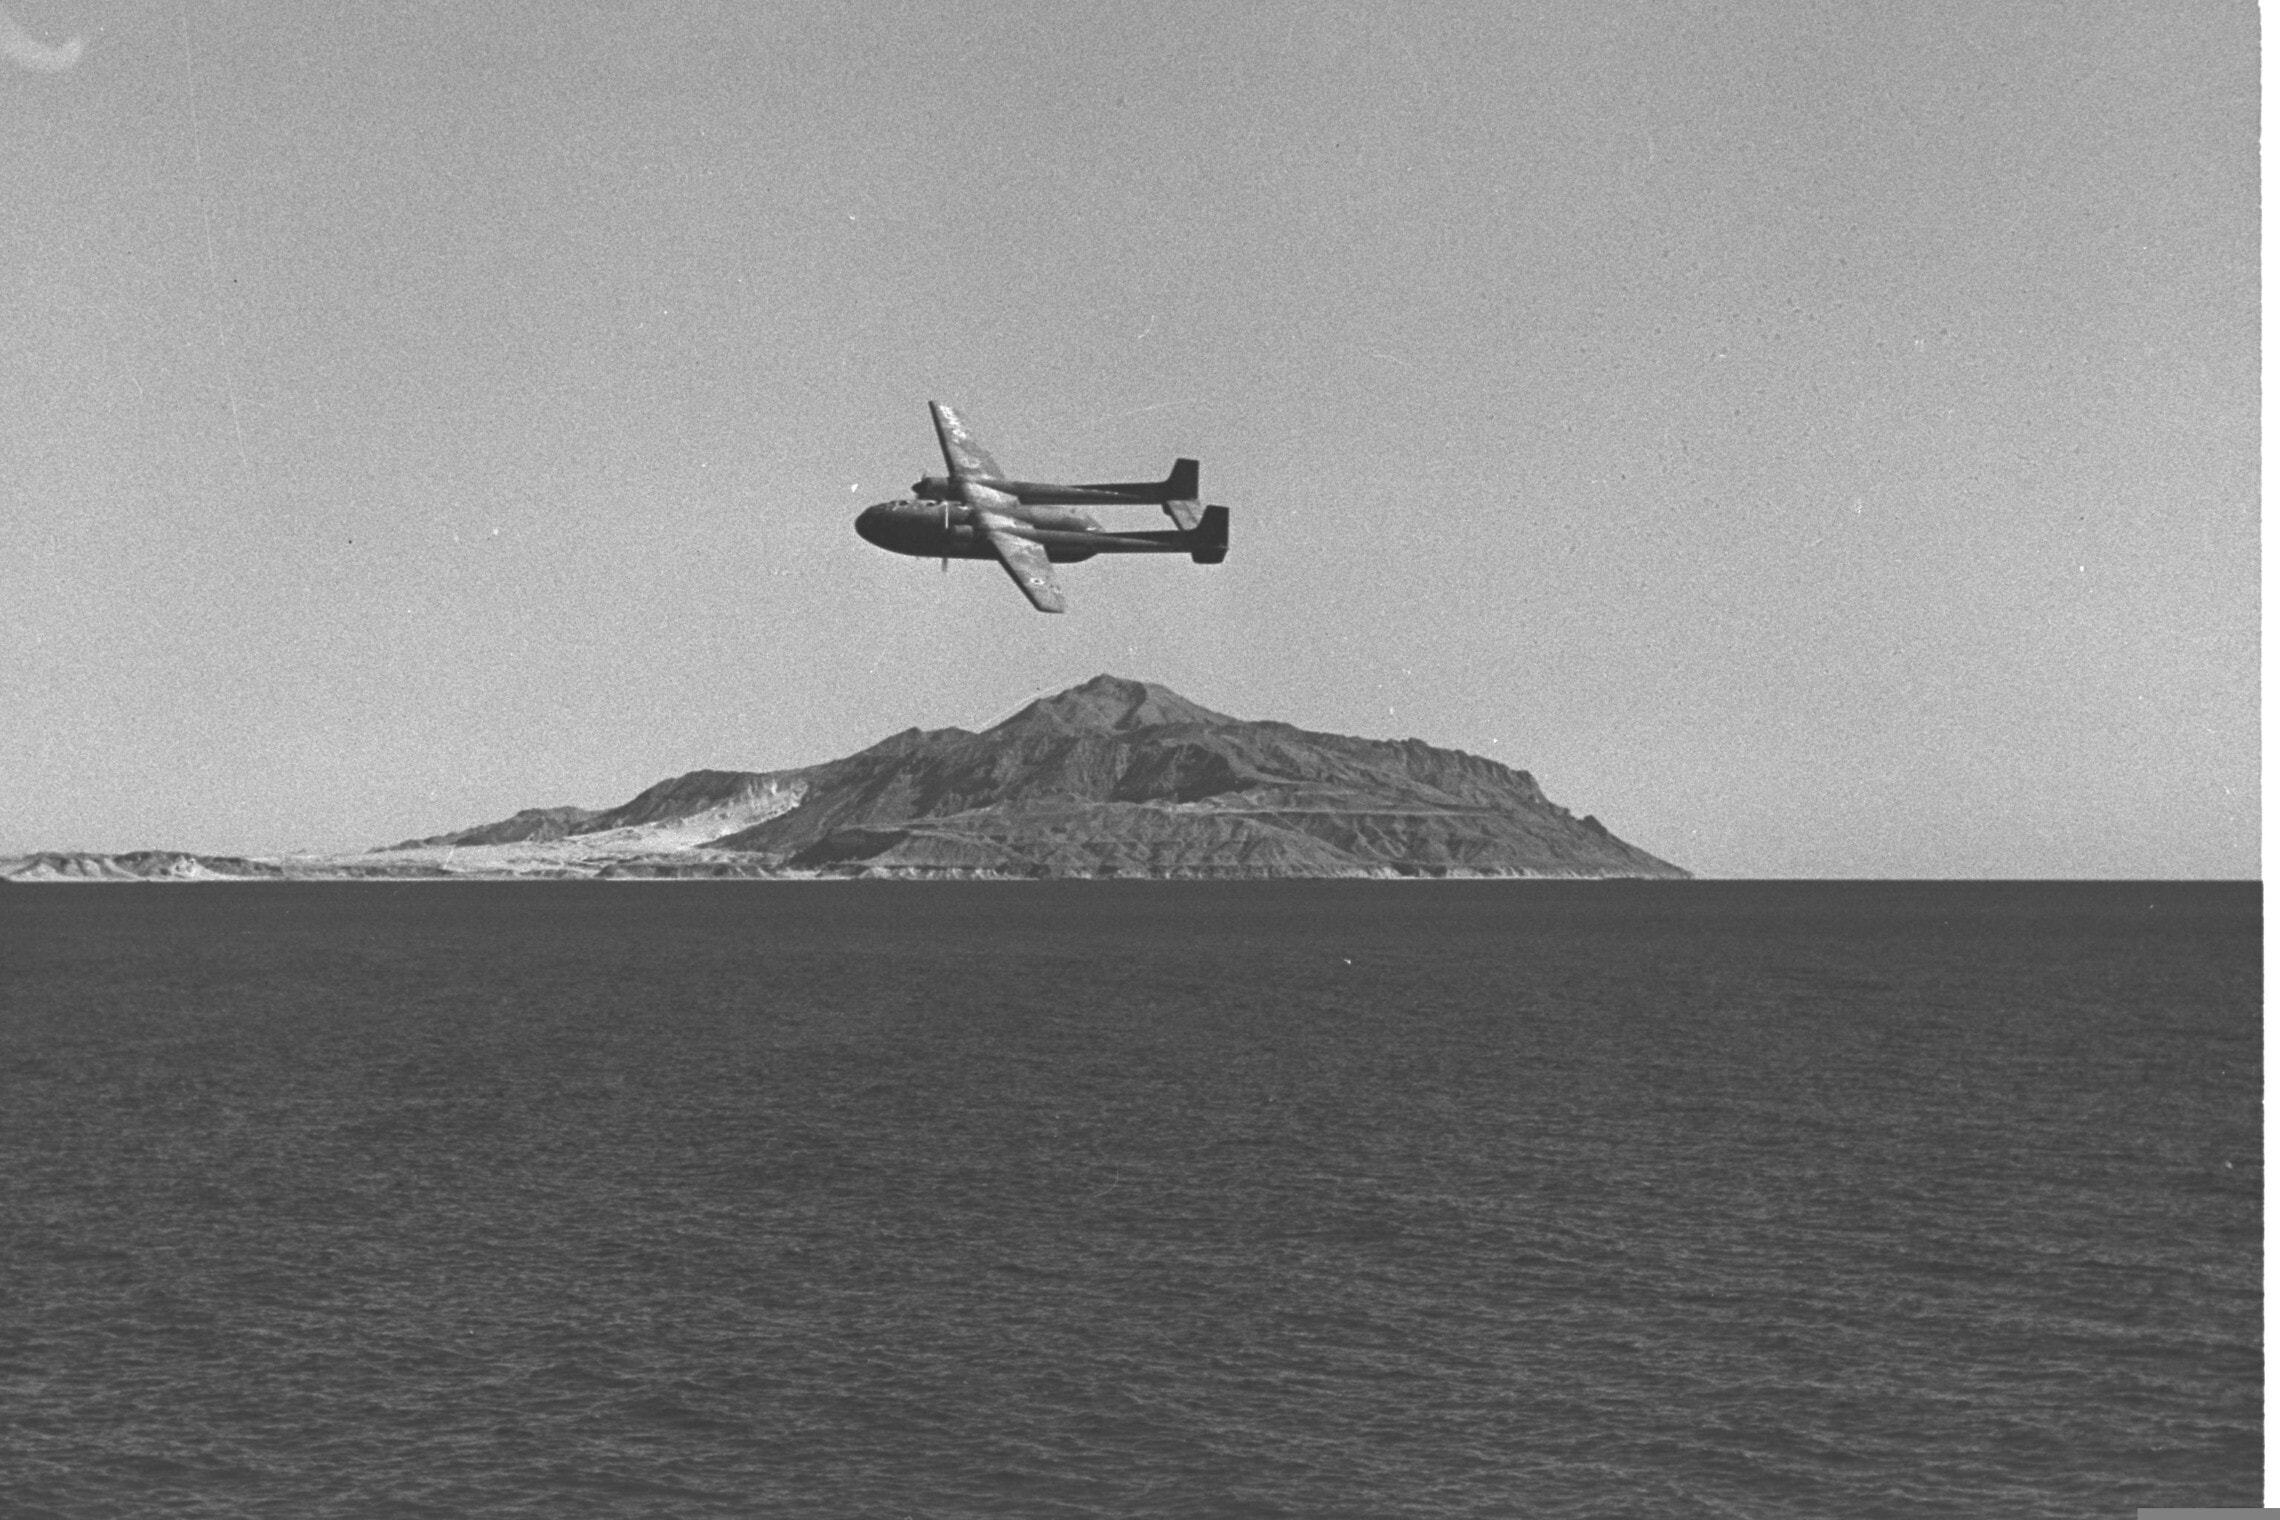 מצרי טיראן והאי טיראן בינואר 1957 (צילום: אוסף התצלומים הלאומי)